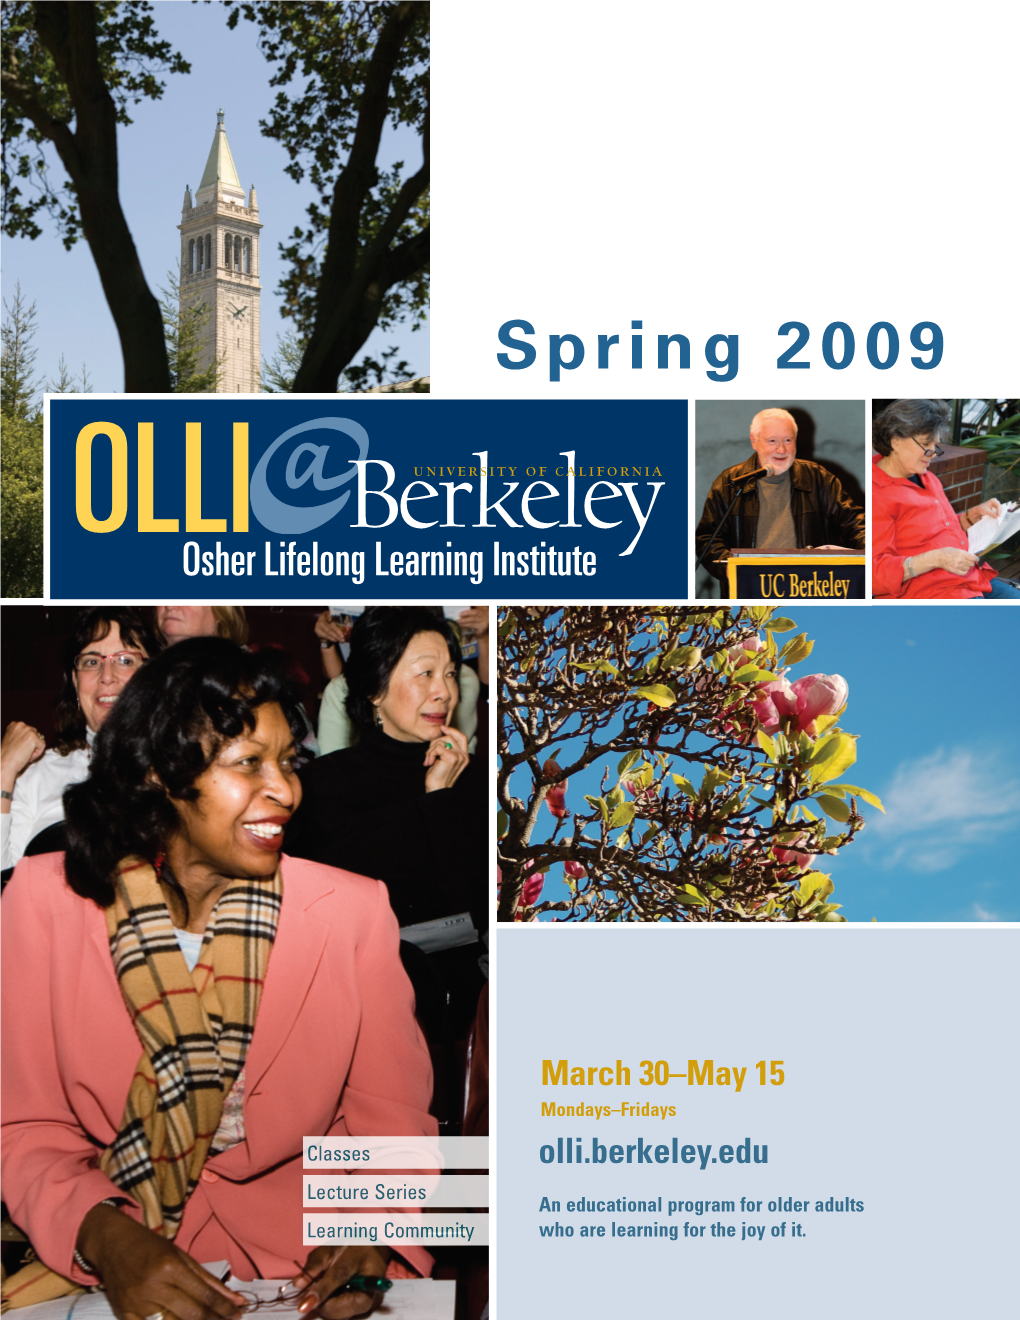 Spring 2009 OLLI Berkeleyuniversity of California Osher Lifelong Learning Institute